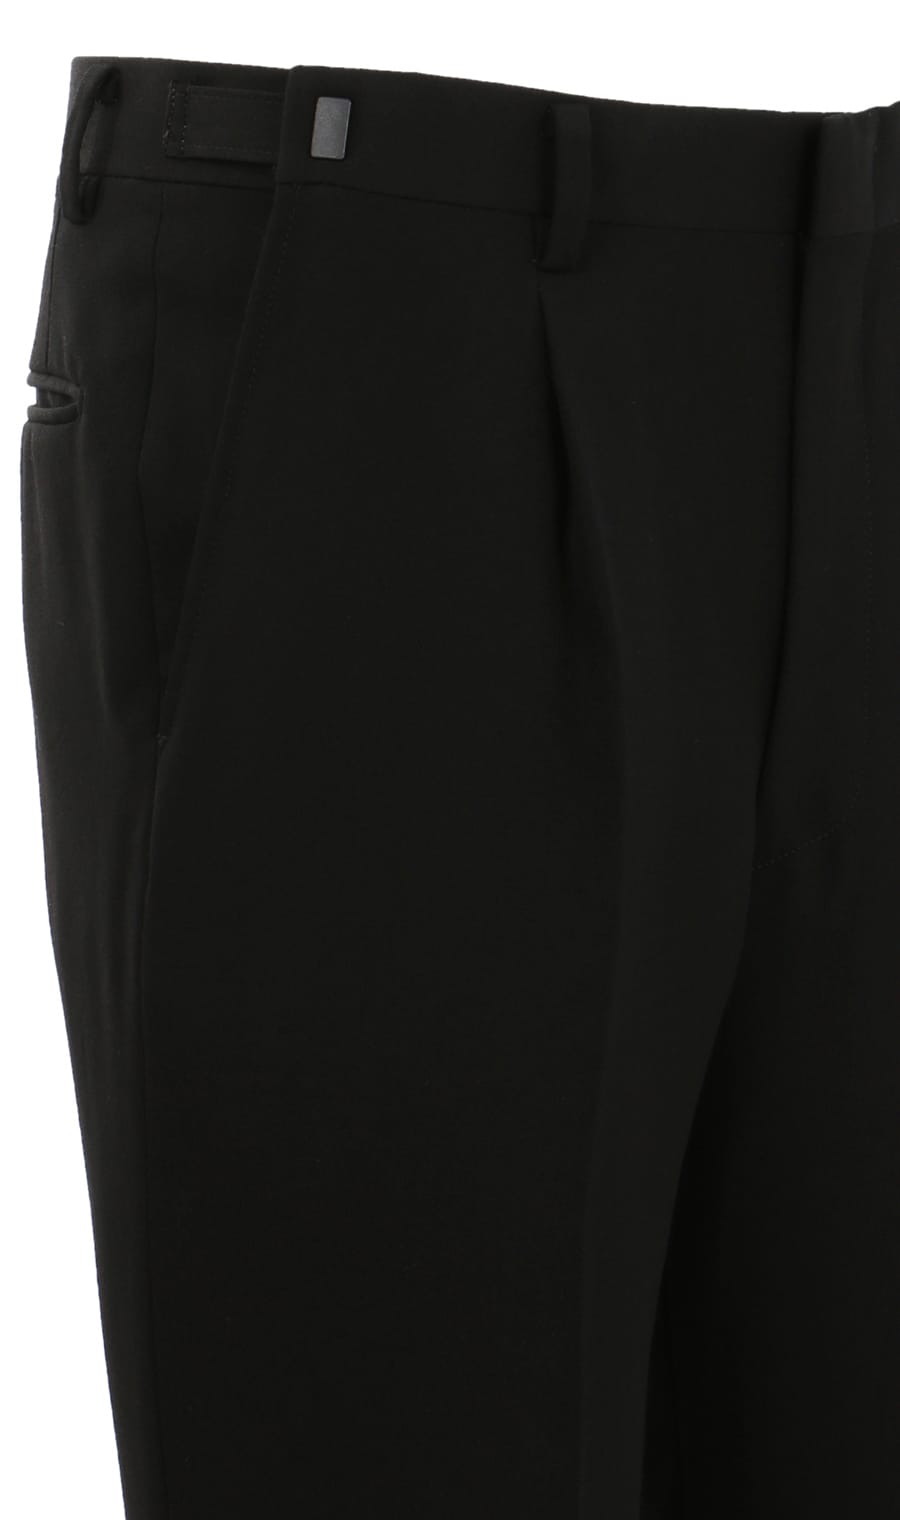 市場 スリーシーズン用 ブラック系 ダブルスタンダードフォーマル Savile Row メンズ スーツ 濃染加工 ブラックフォーマル 標準体 礼服 